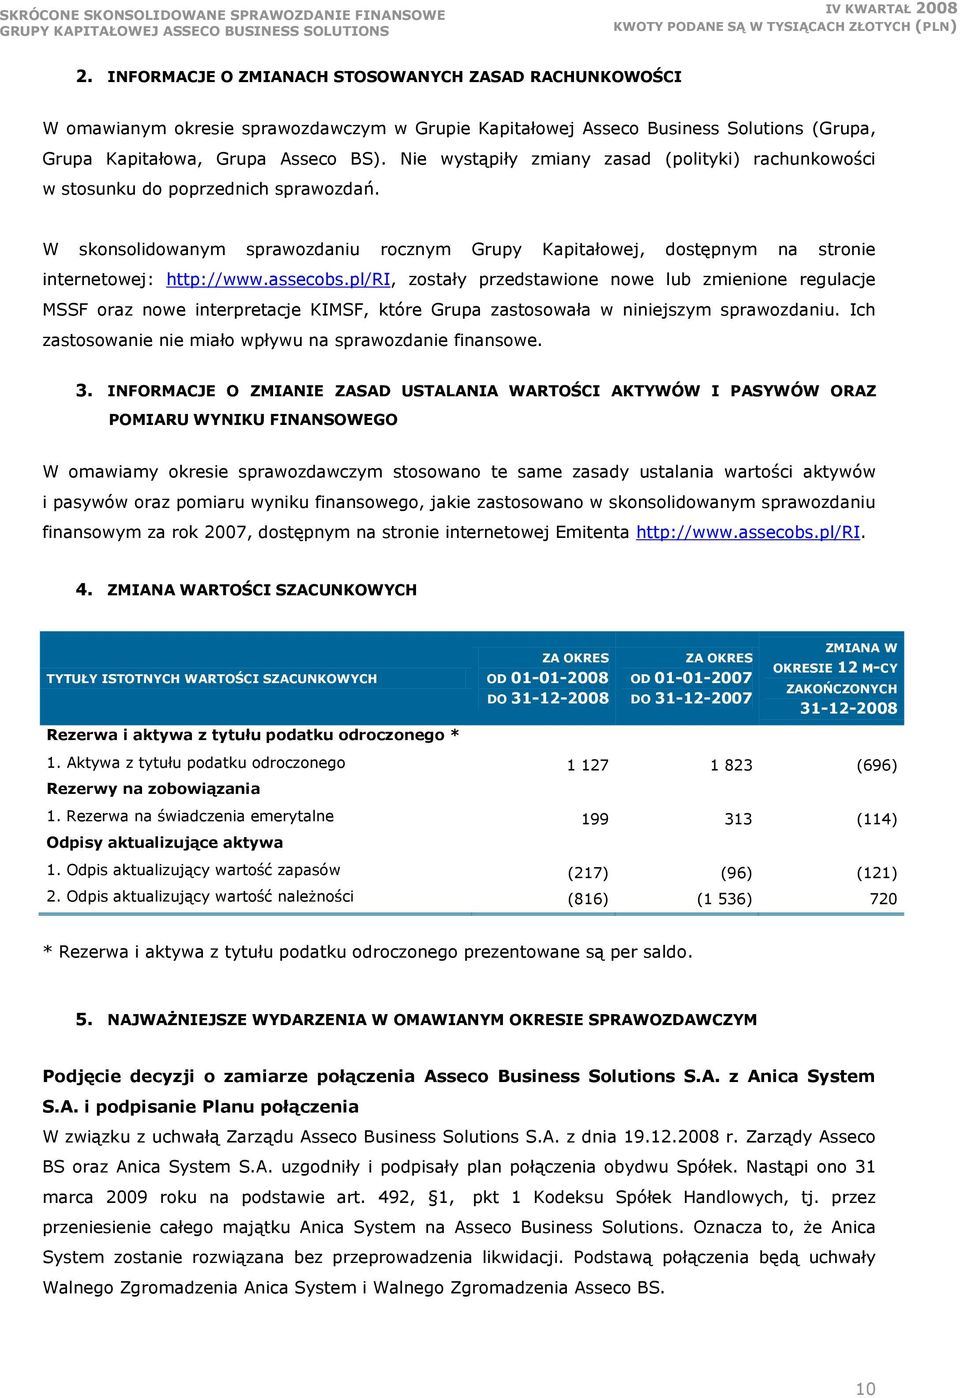 assecobs.pl/ri, zostały przedstawione nowe lub zmienione regulacje MSSF oraz nowe interpretacje KIMSF, które Grupa zastosowała w niniejszym sprawozdaniu.